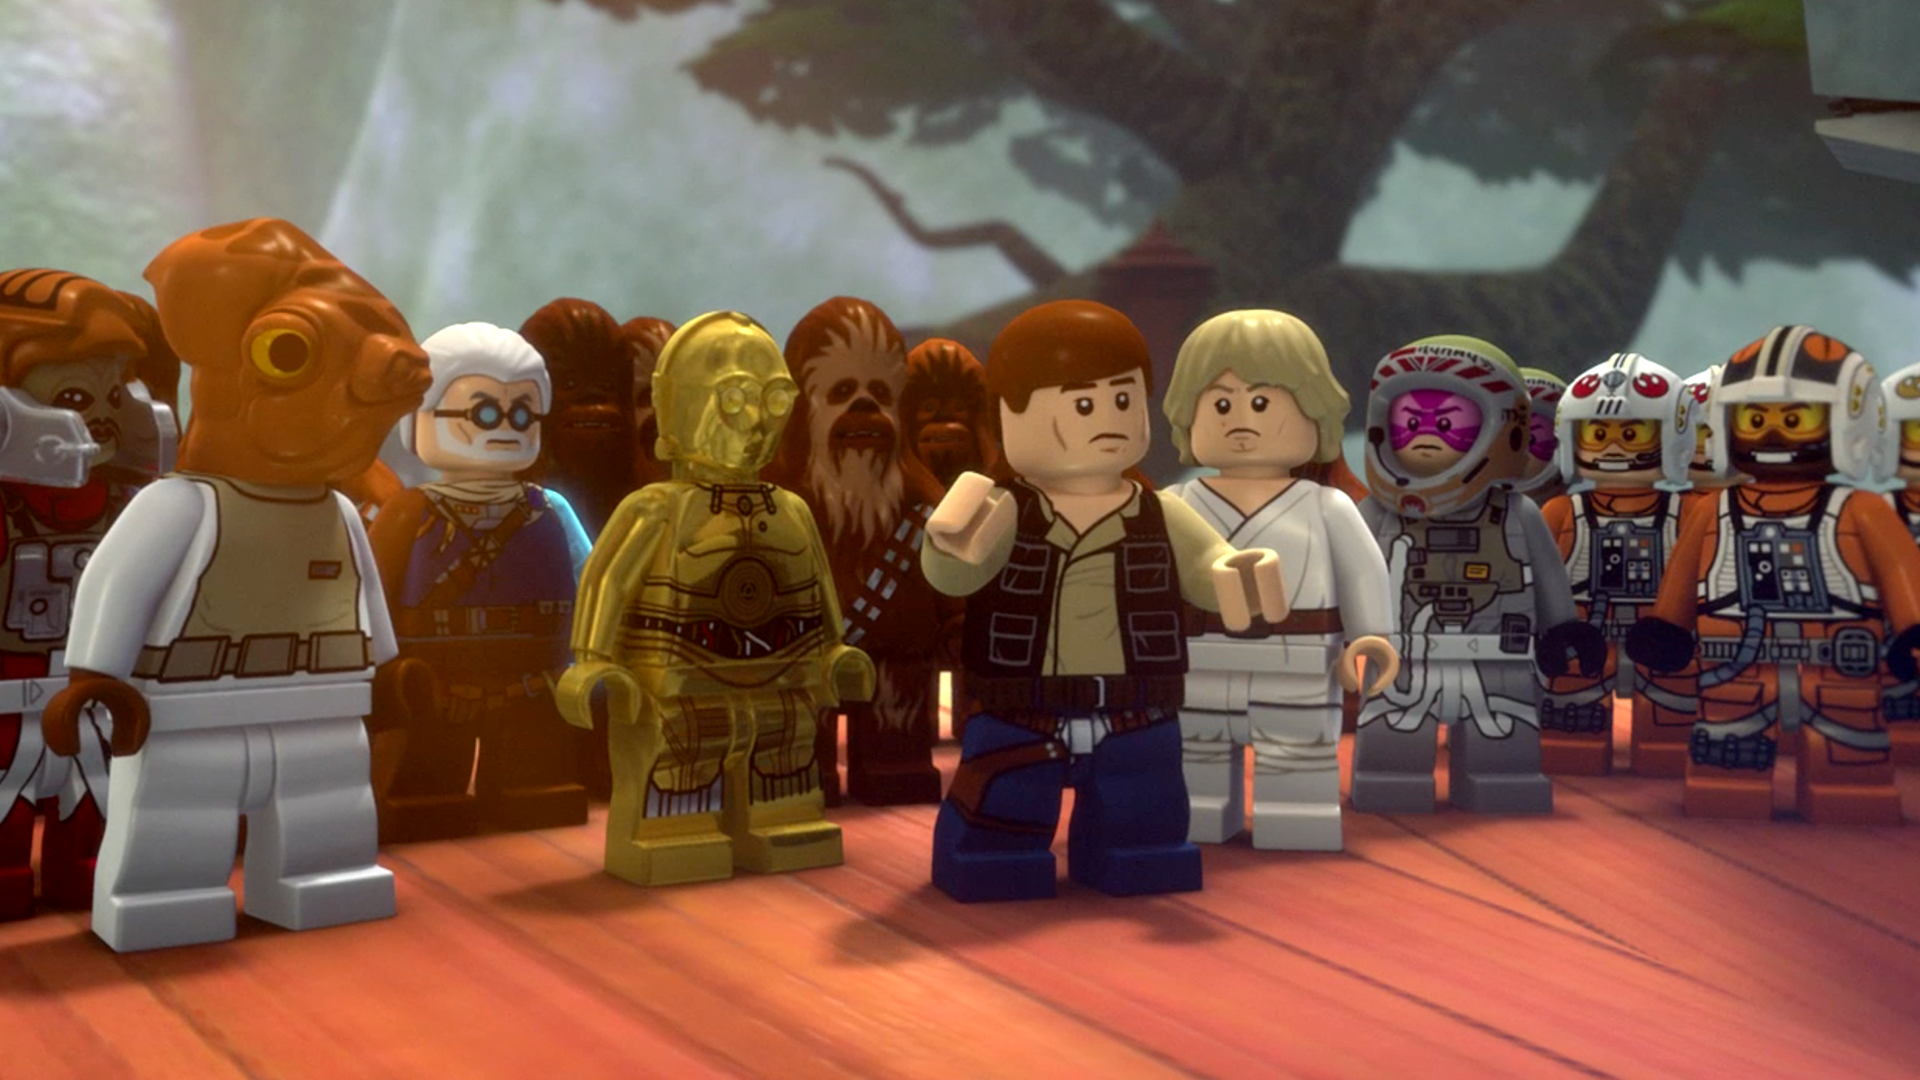 Lego Star Wars: Die neuen Yoda-Chroniken: Episode VI: Angriff auf Coruscant